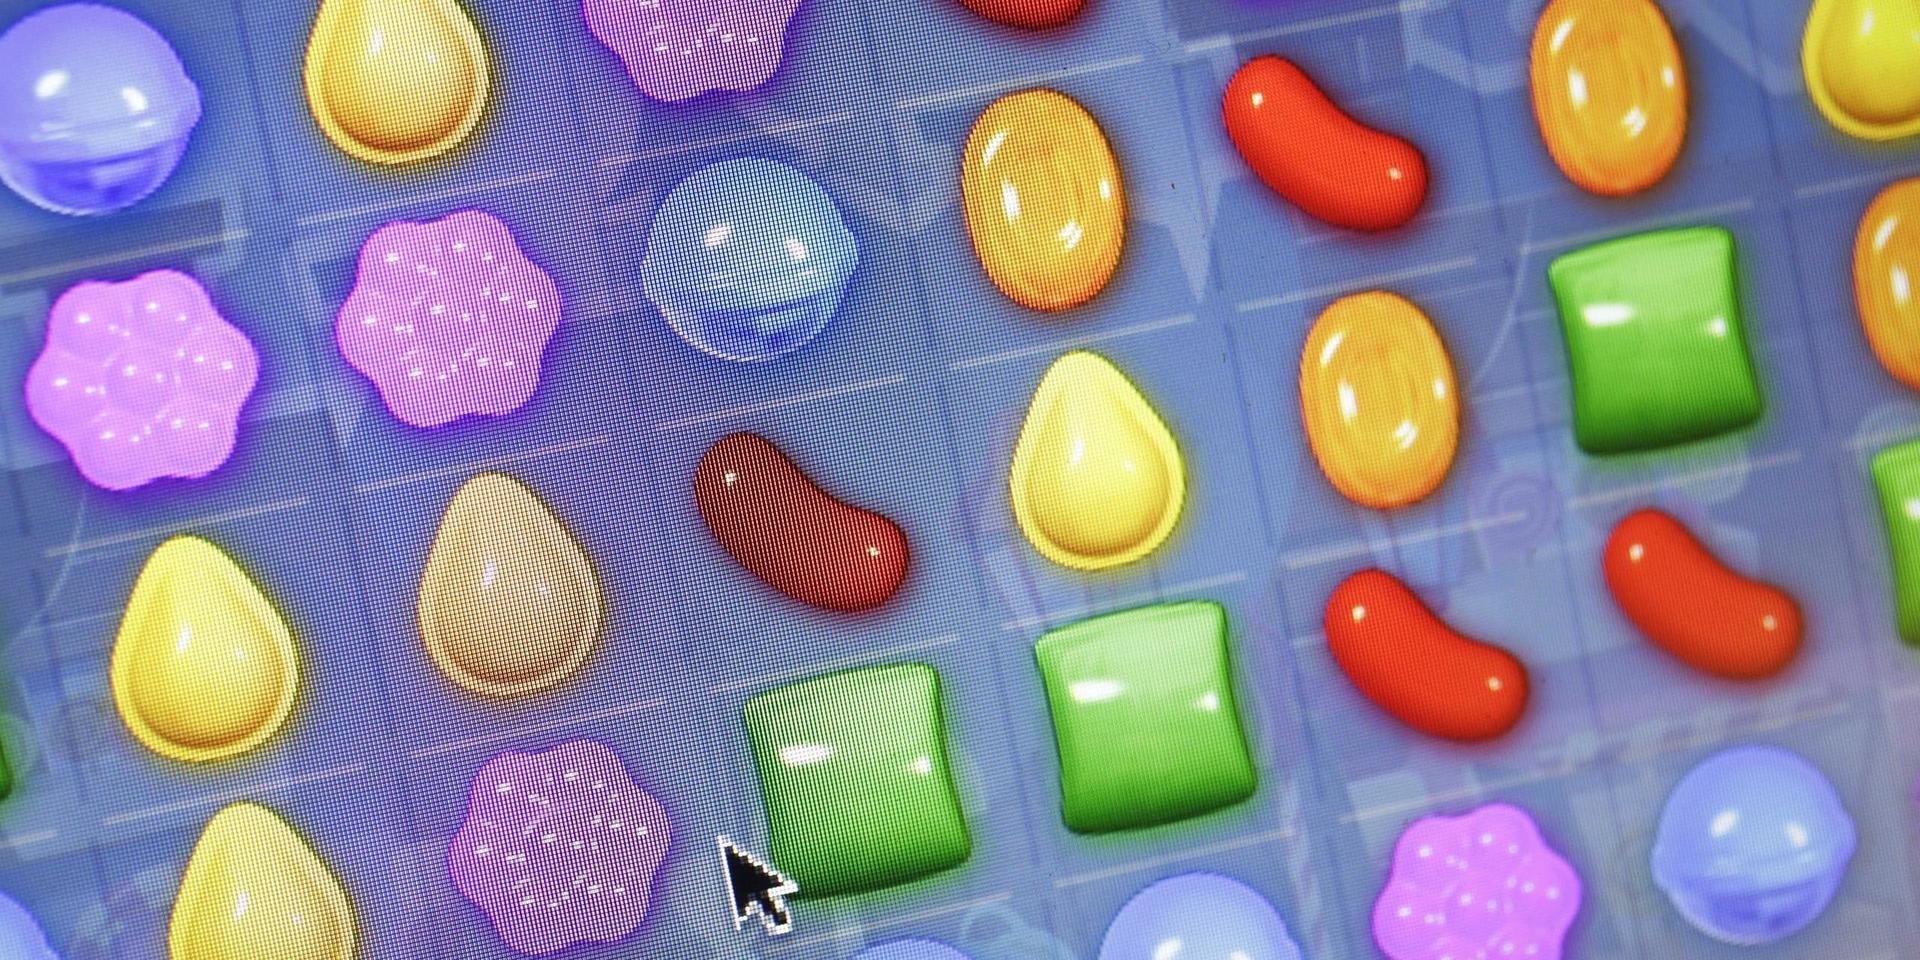 Mobilspelet Candy Crush, utvecklat av svenska King som ingår i skandalomsusade Activision Blizzard, fortsätter att locka användare. Arkivbild.